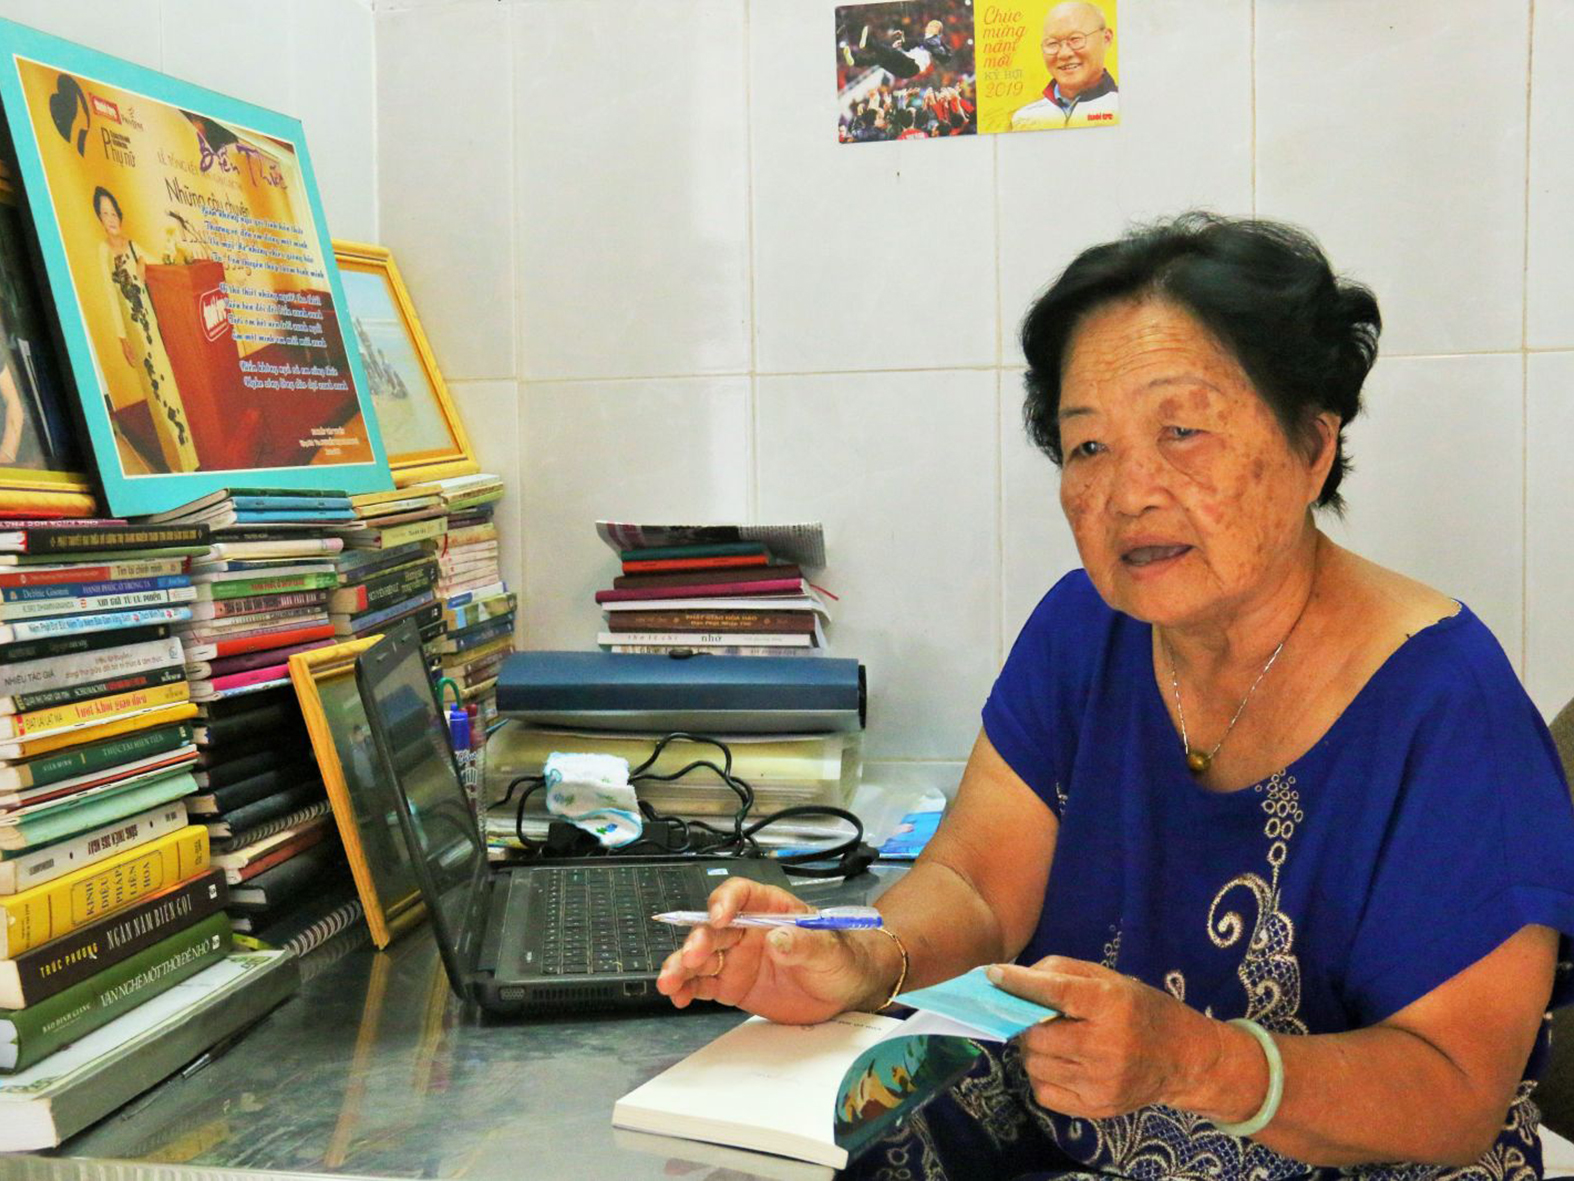 Nhà văn Nguyễn Thị Thanh Huệ ký tặng sách “Con cò mồ côi”. Ảnh: ĐĂNG HUỲNH